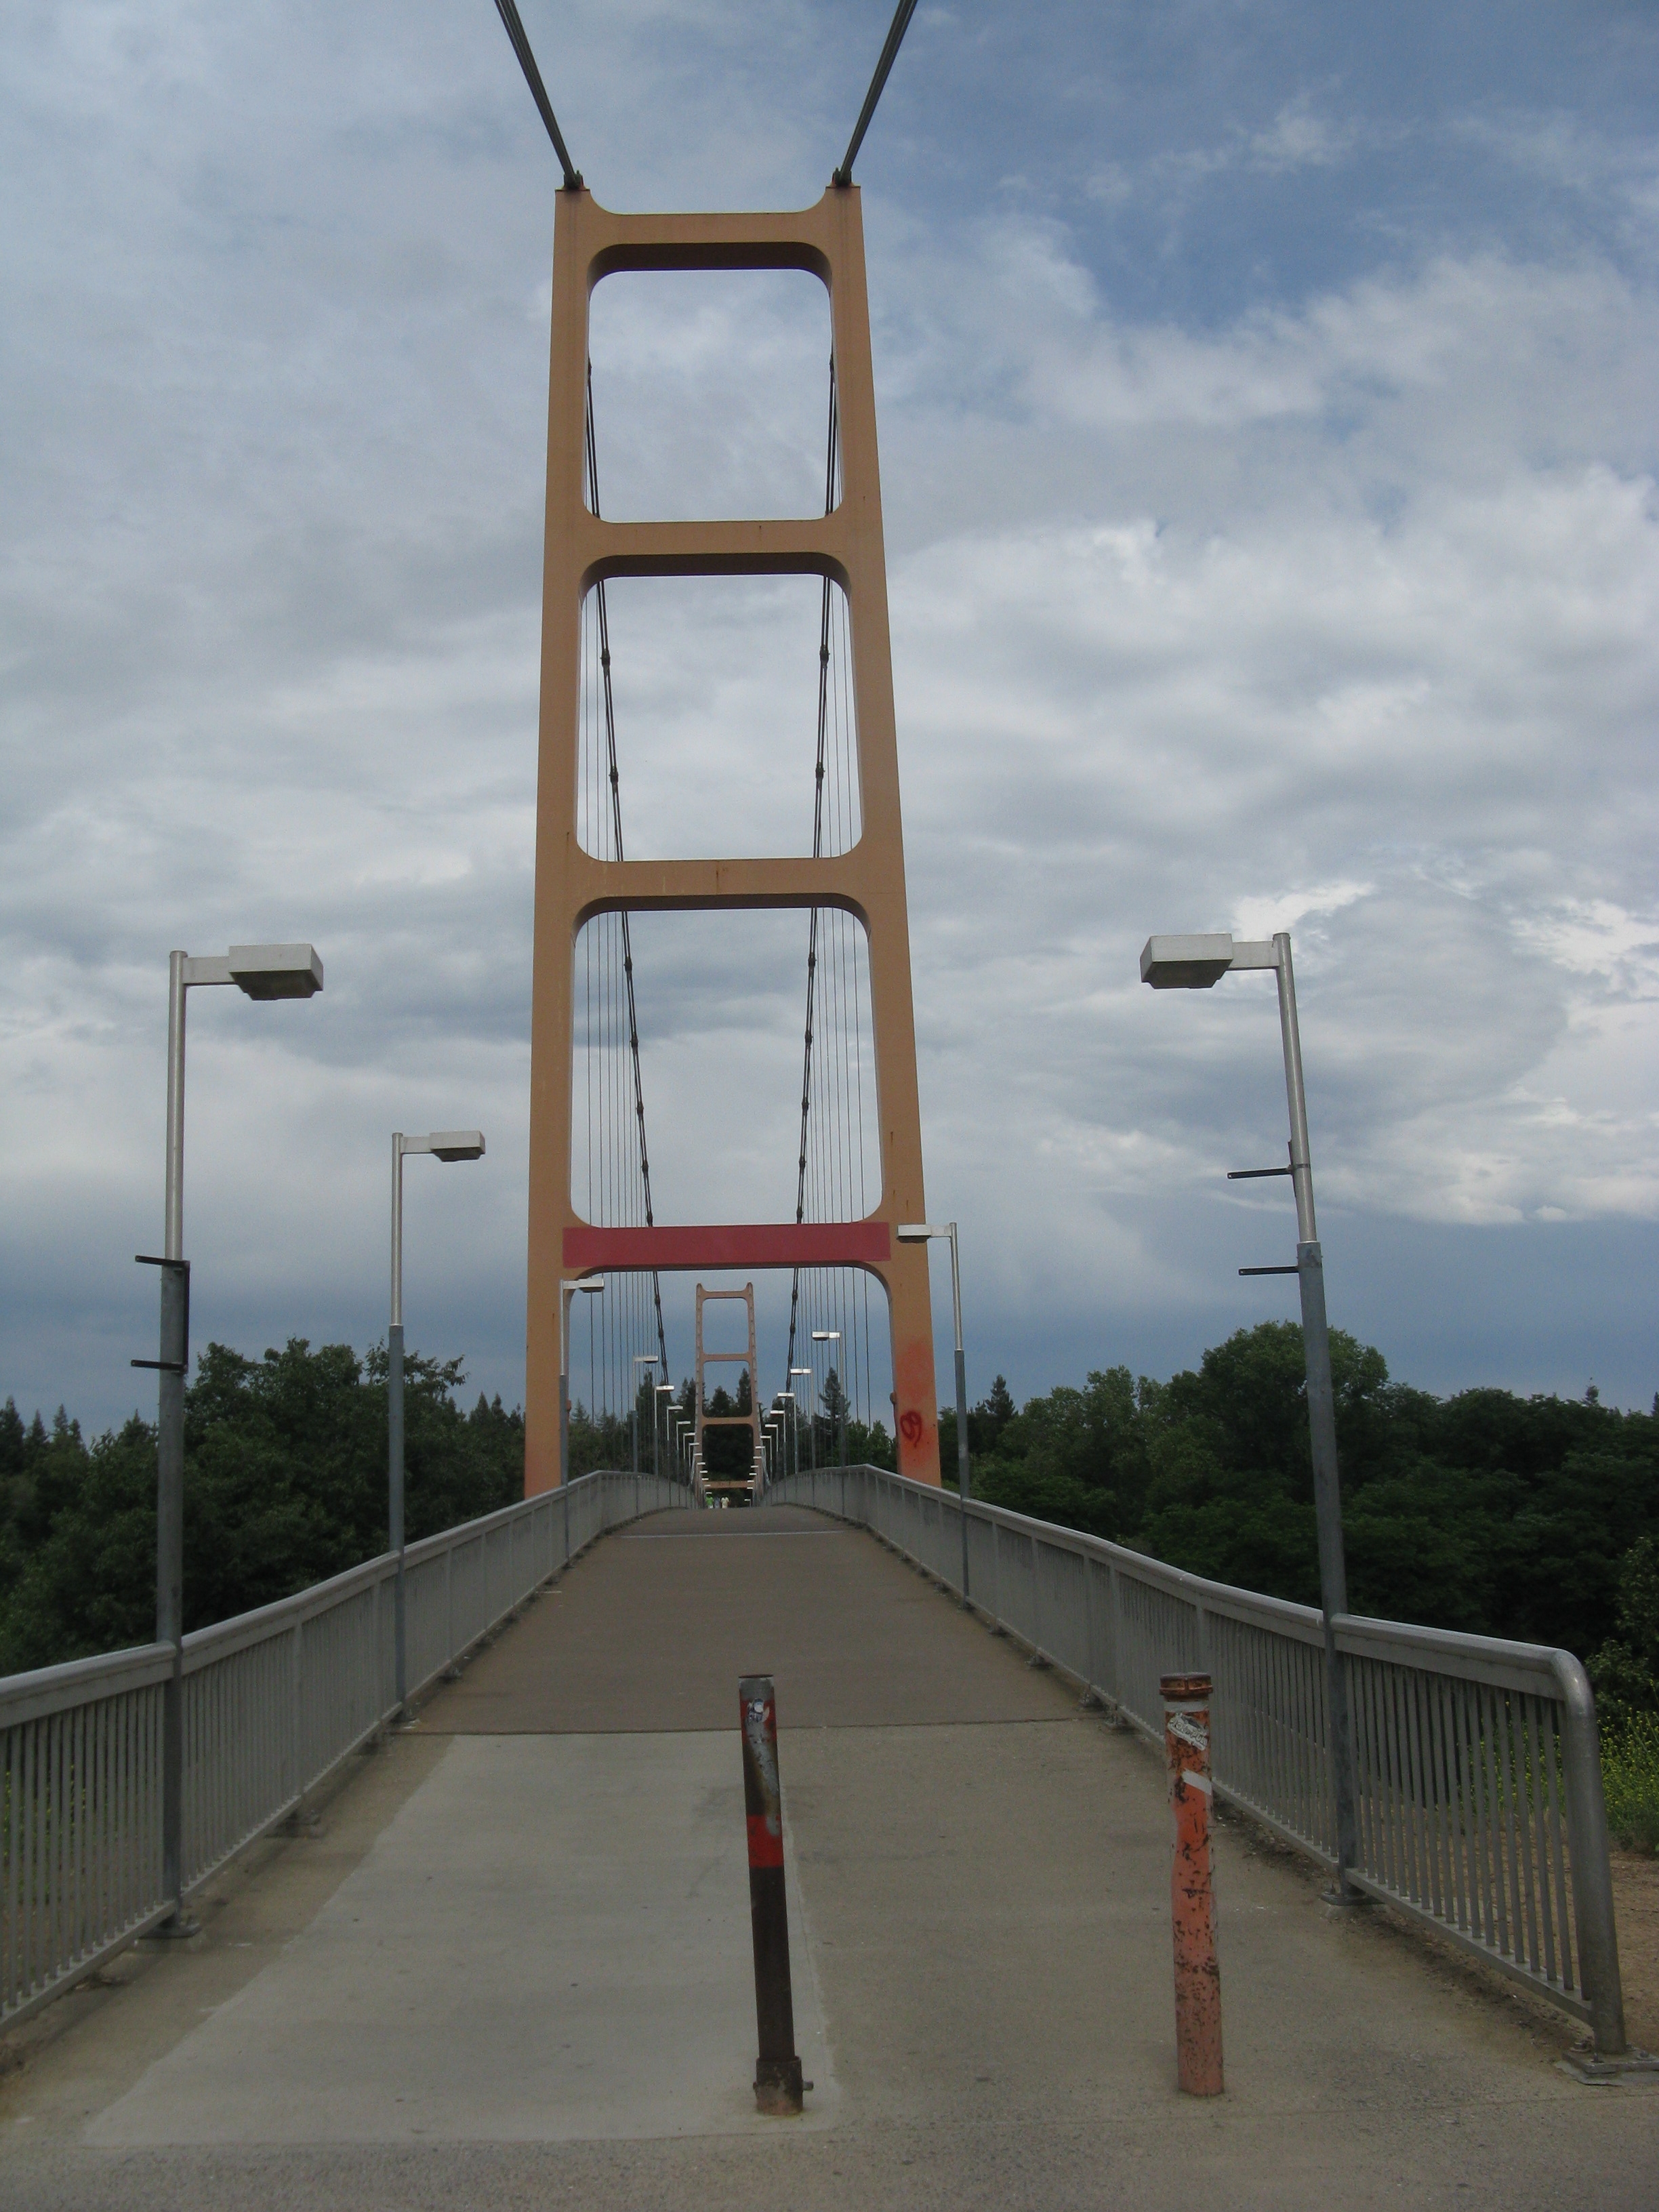 The Guy West Bridge